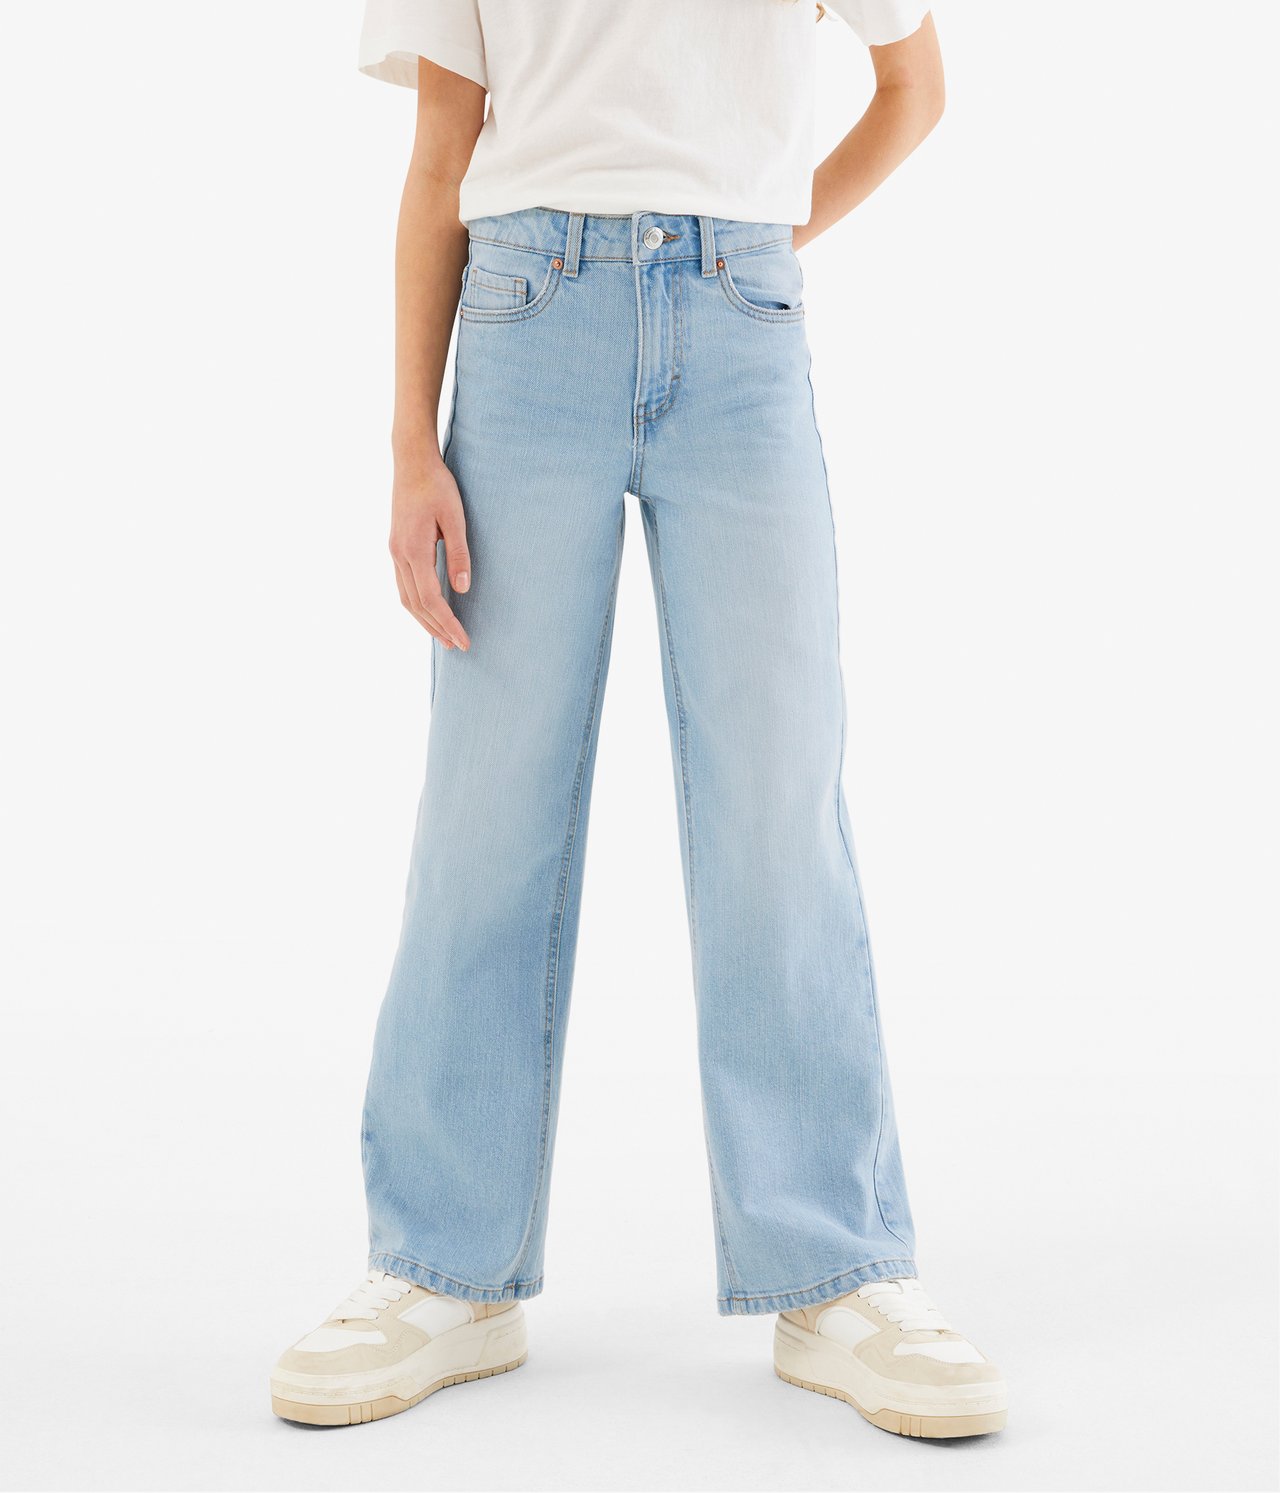 Jeans wide fit mid waist - Ljus denim - 2